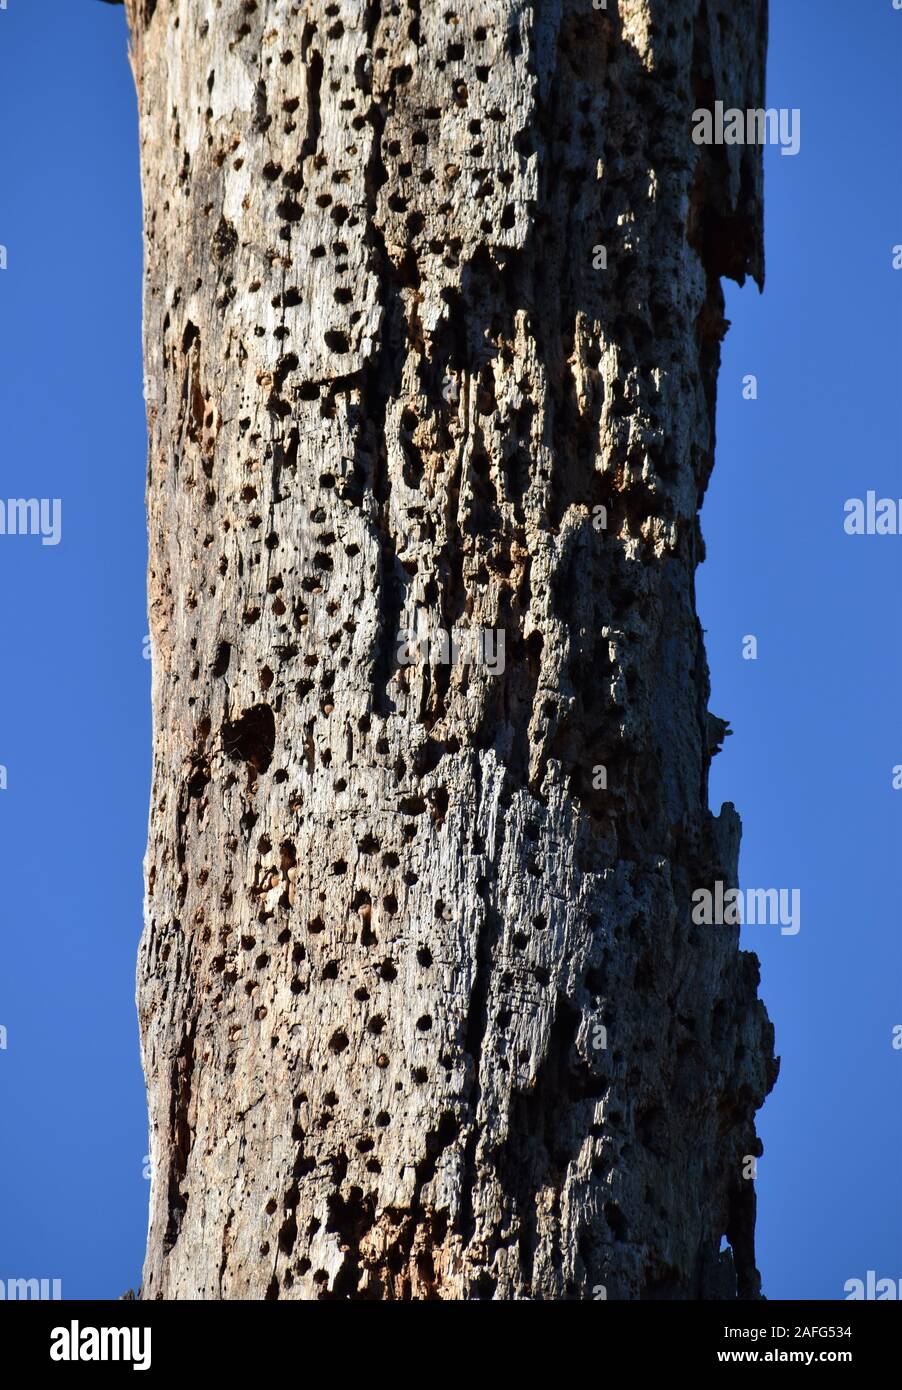 Un arbre mort criblé de trous de pics, le long de la Californie Elkhorn Slough Banque D'Images